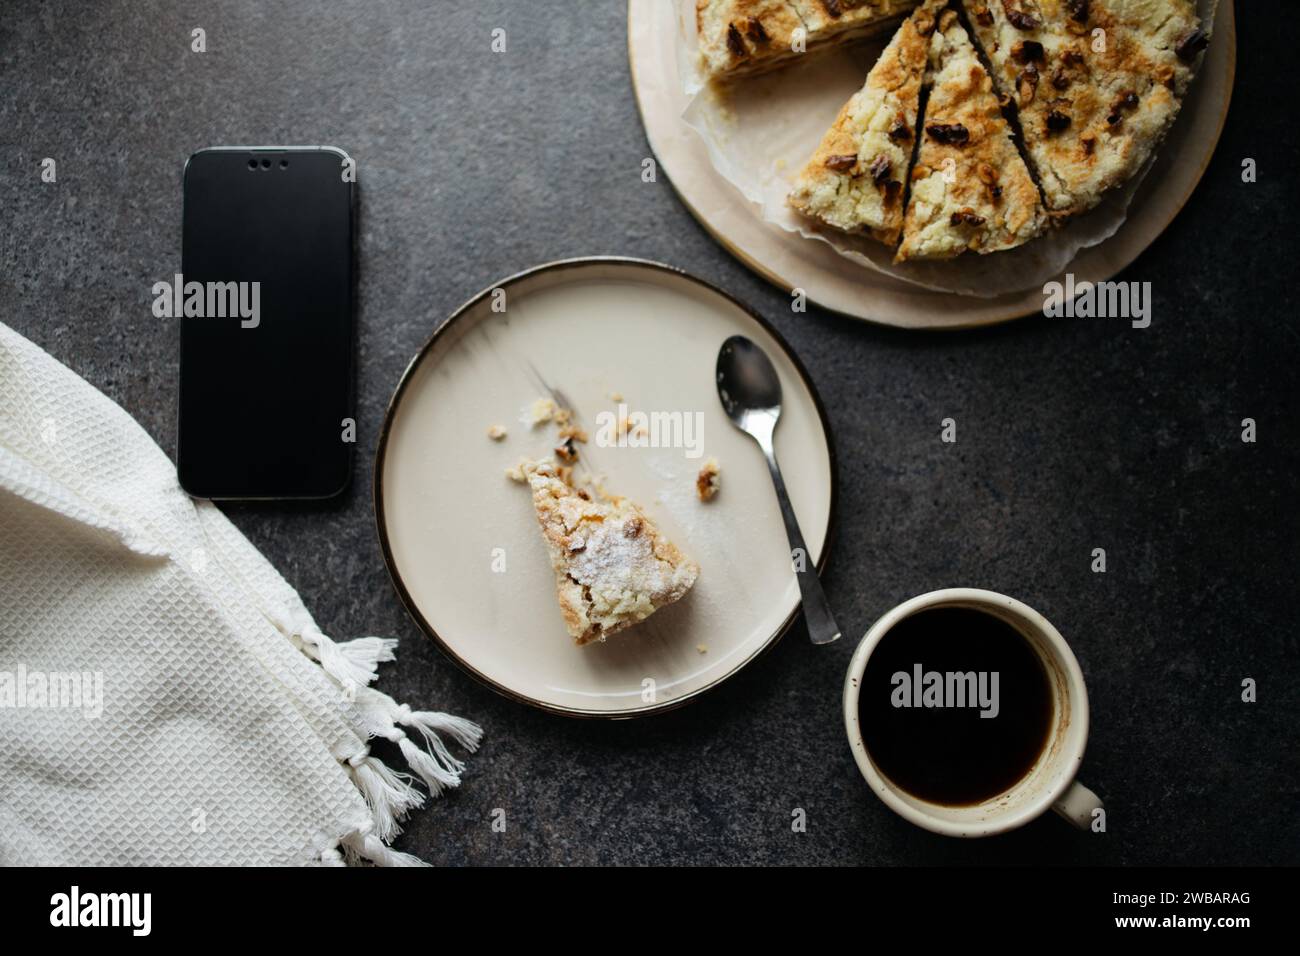 Prendre des repas avec smartphone. Vue de dessus de morceau de tarte mordu sur l'assiette, tarte entière et tasse de café noir Banque D'Images